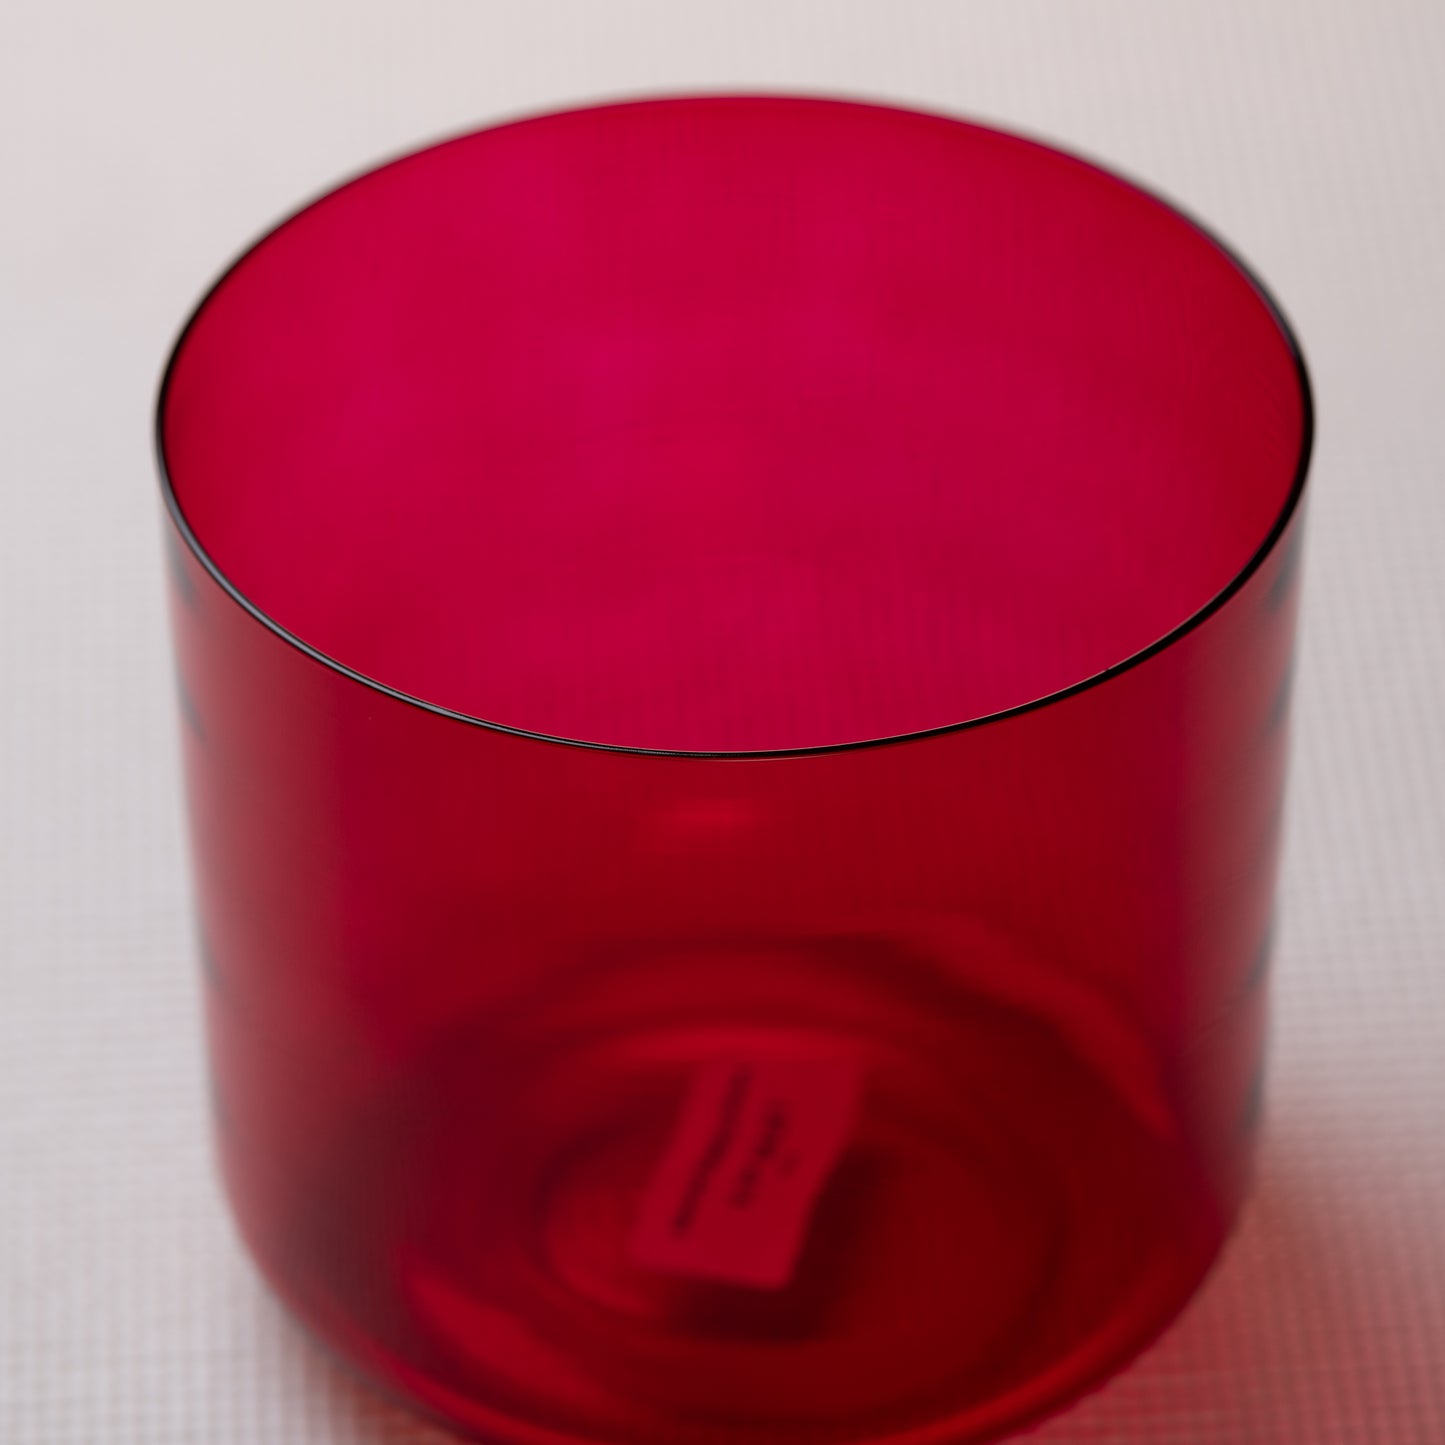 6.75" C#-23 Ruby Color Crystal Singing Bowl, Sacred Singing Bowls